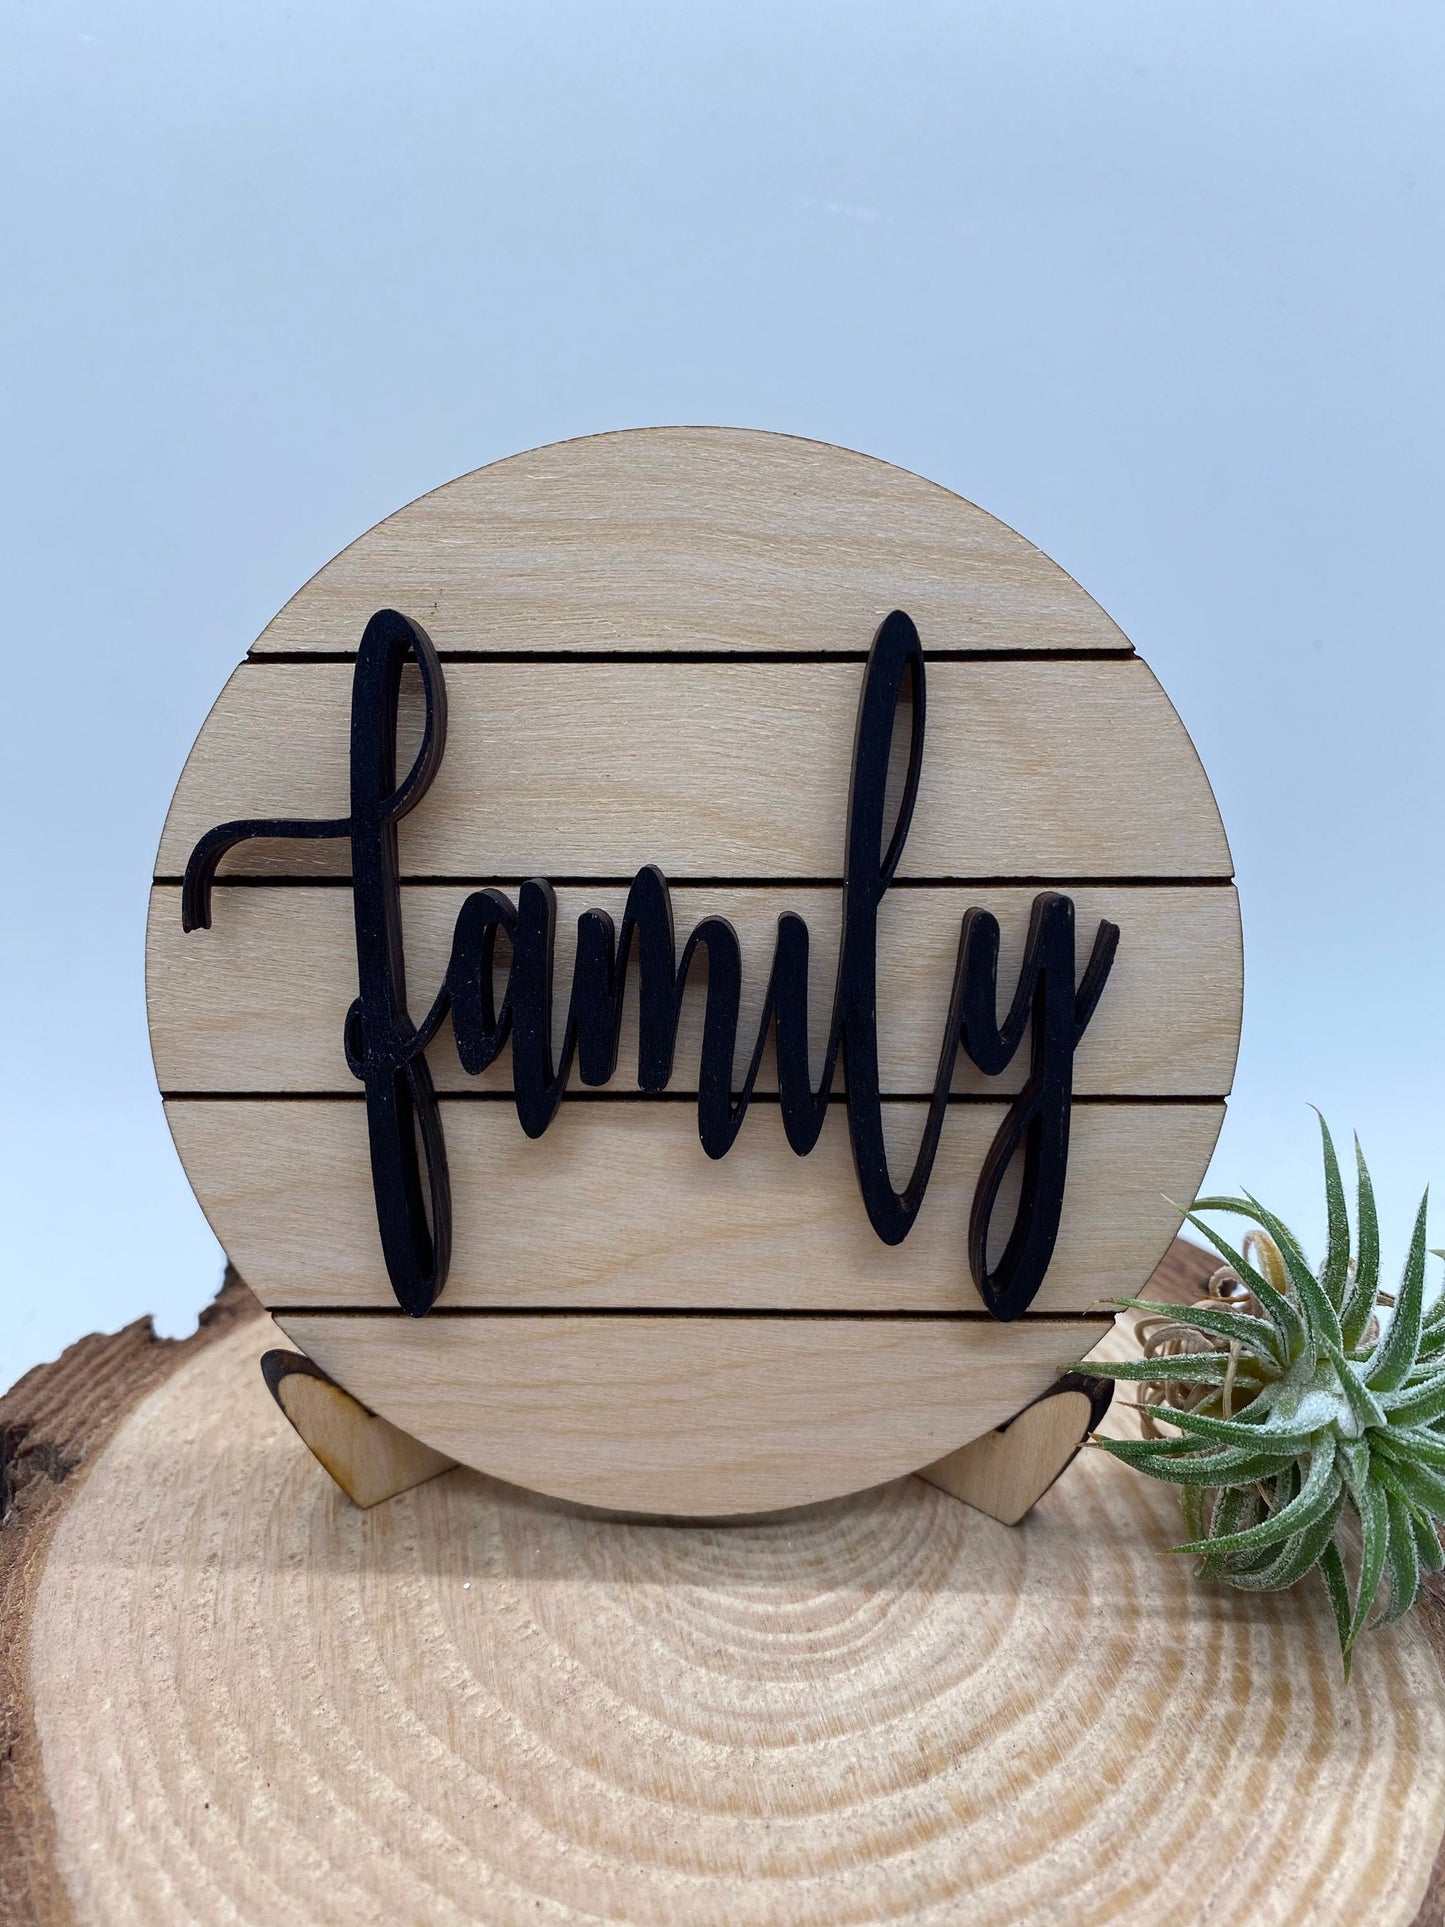 Family Tiered Tray Sign, Mini Shiplap Tray Sign, Tiered Tray Decor, 4” Round Tiered Tray Sign, Wood Tiered Tray Sign, Tiered Tray